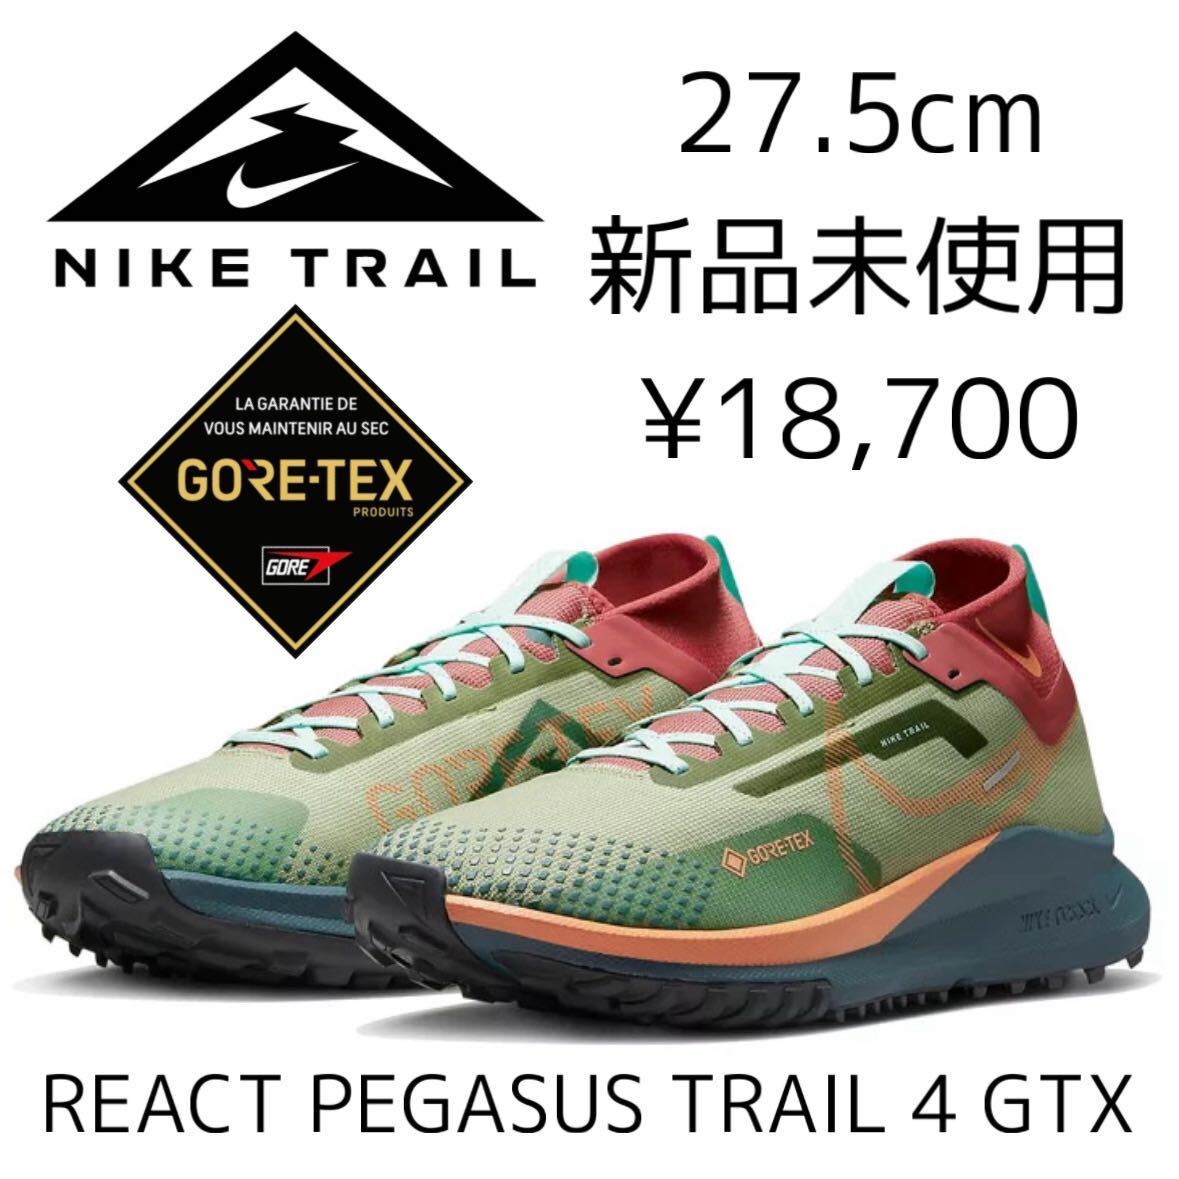 GORE-TEX 27,5 см New Nike React Pegasus Trail 4 GTX React Pegasus Trail Gore-Tex Toleeran обувь The Trellan Trail Trail Runge Rung